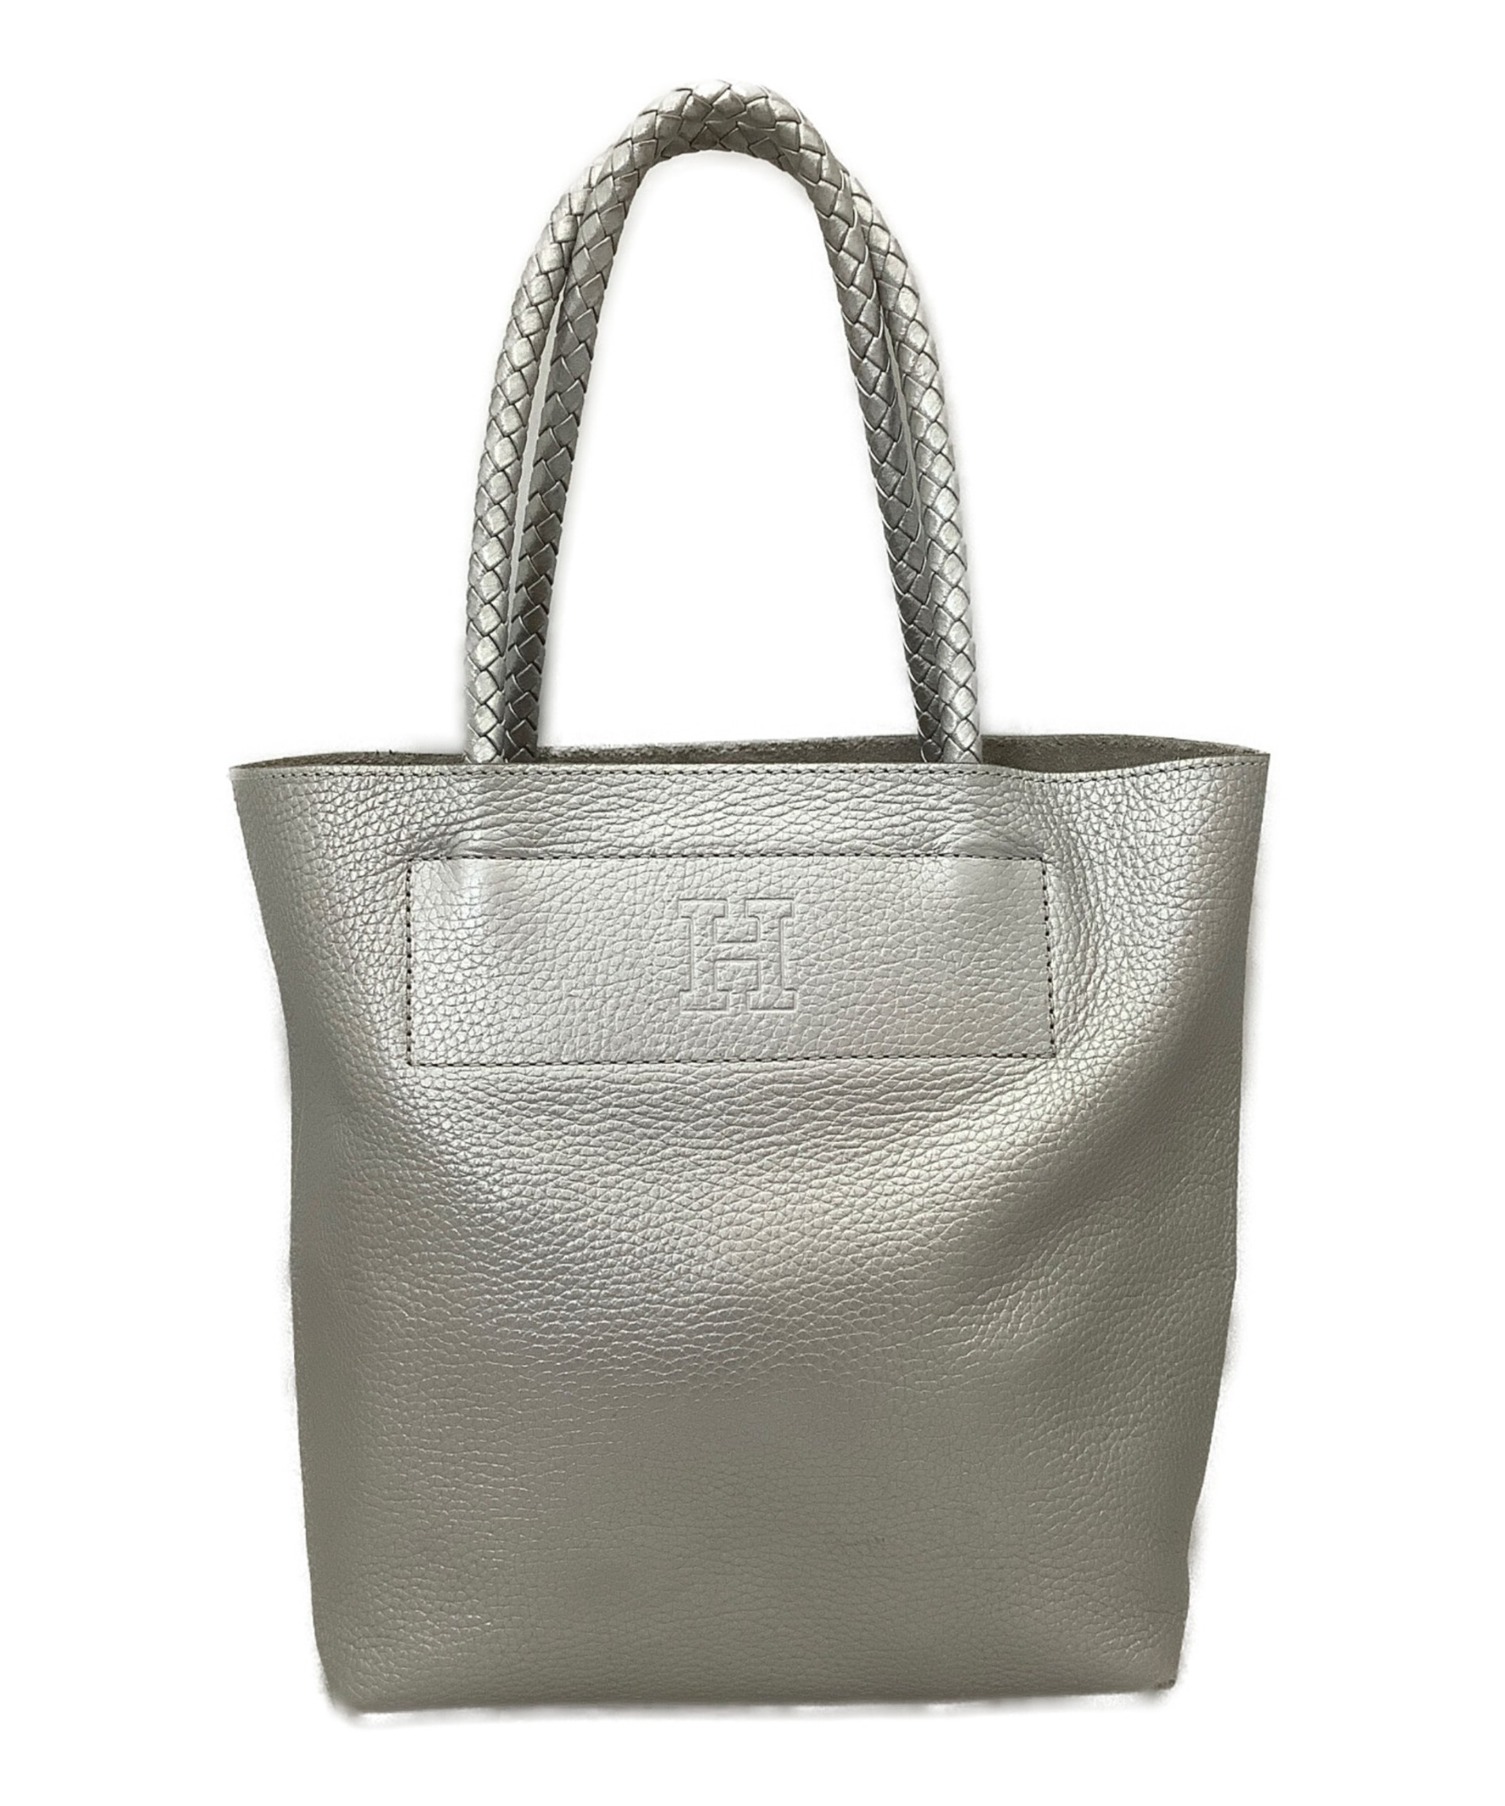 ヒロフ／HIROFU バッグ トートバッグ 鞄 ハンドバッグ レディース 女性 女性用レザー 革 本革 グレー 灰色  12906V Hロゴ